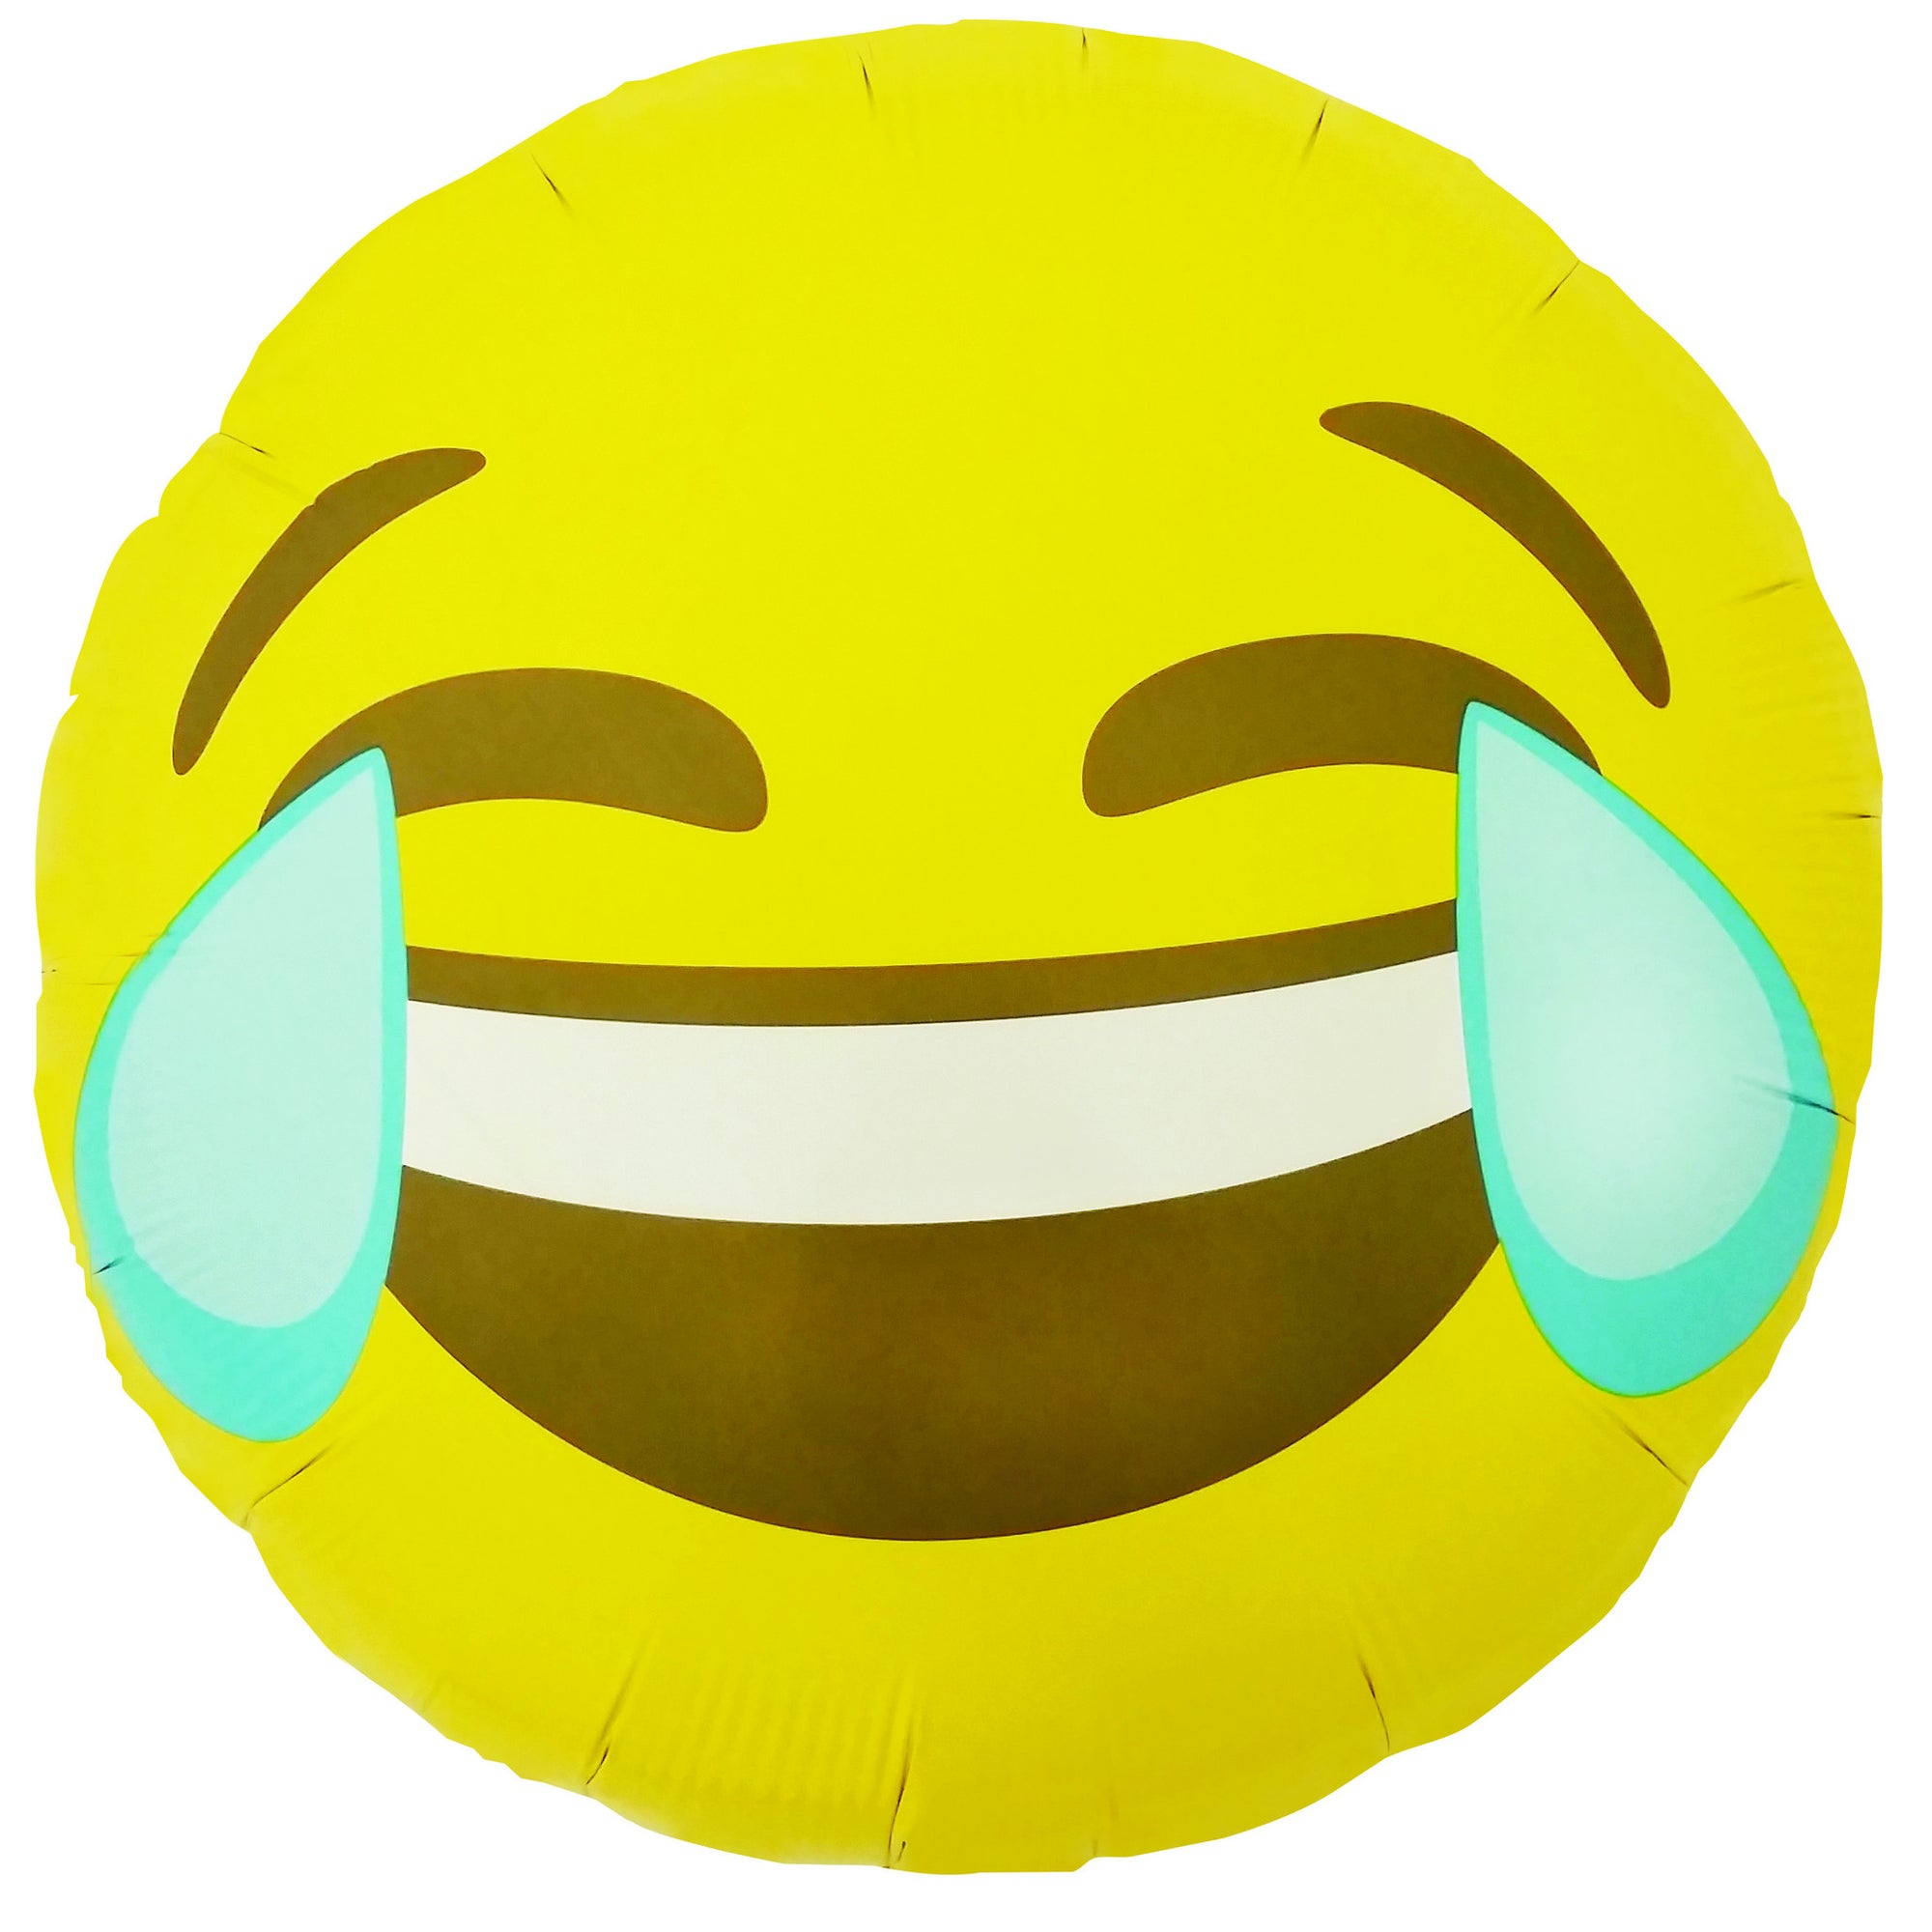 Emoji 18. Смайлик смех. Смеющийся эмодзи. Смеющийся смайлик без фона. Смайлик смех на прозрачном фоне.